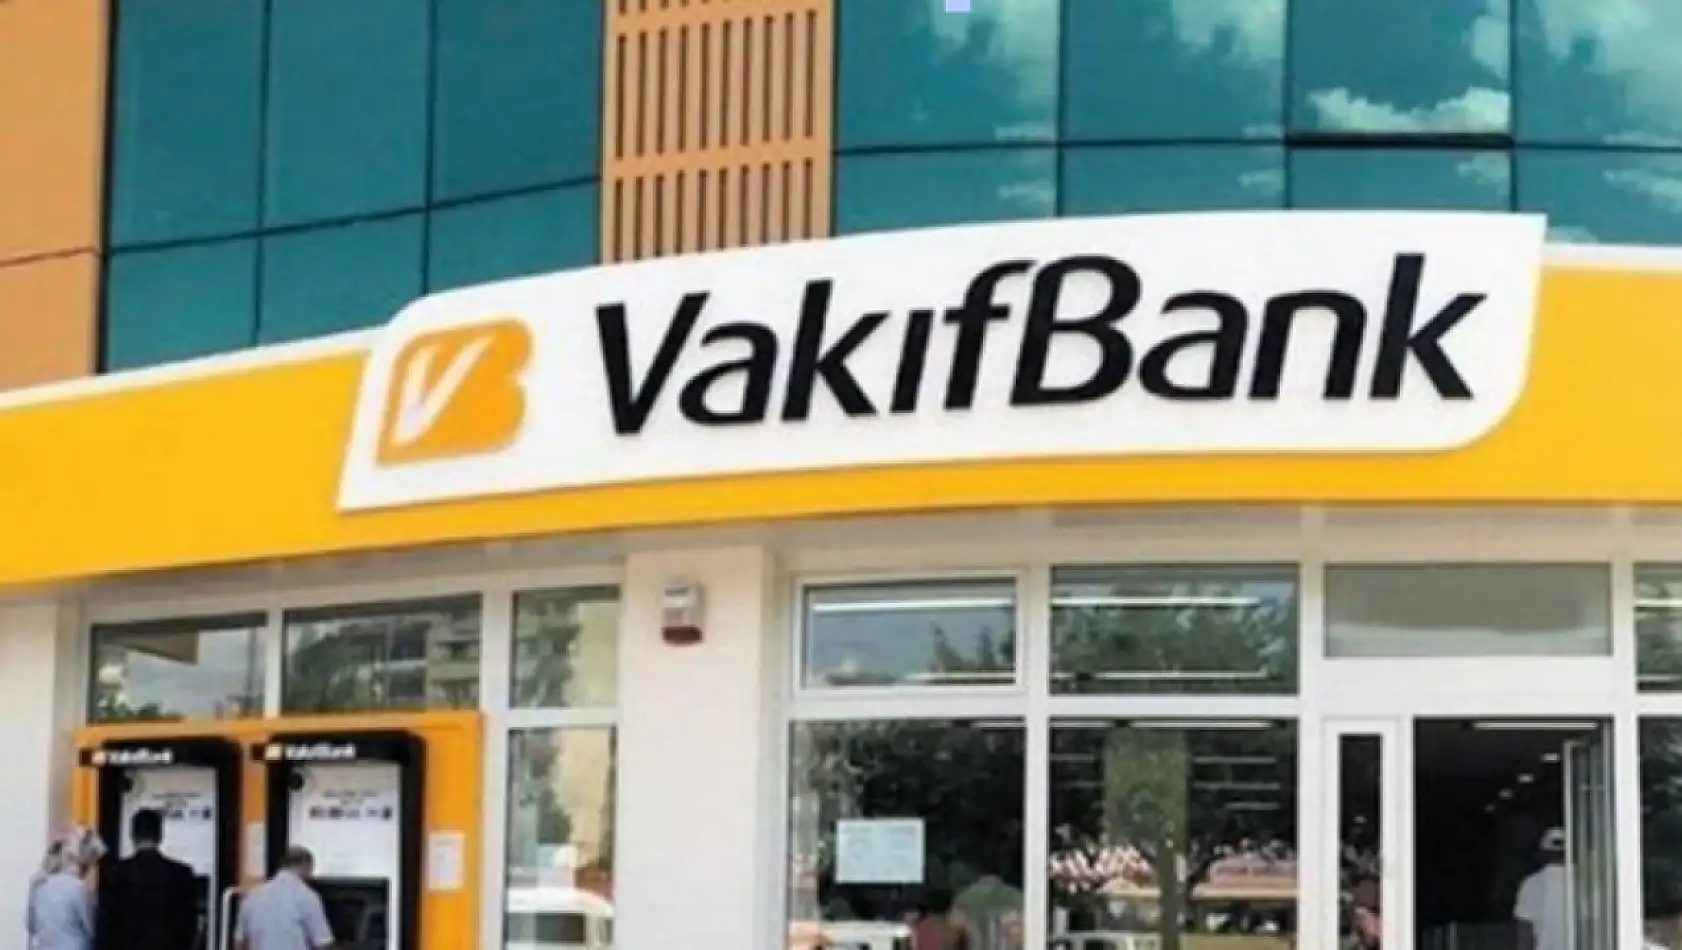 Vakıfbank 20 Maaşınıza Kadar Faizsiz Kredi İmkanı Sunacak! Başvurular Yapılmaya Başladı!